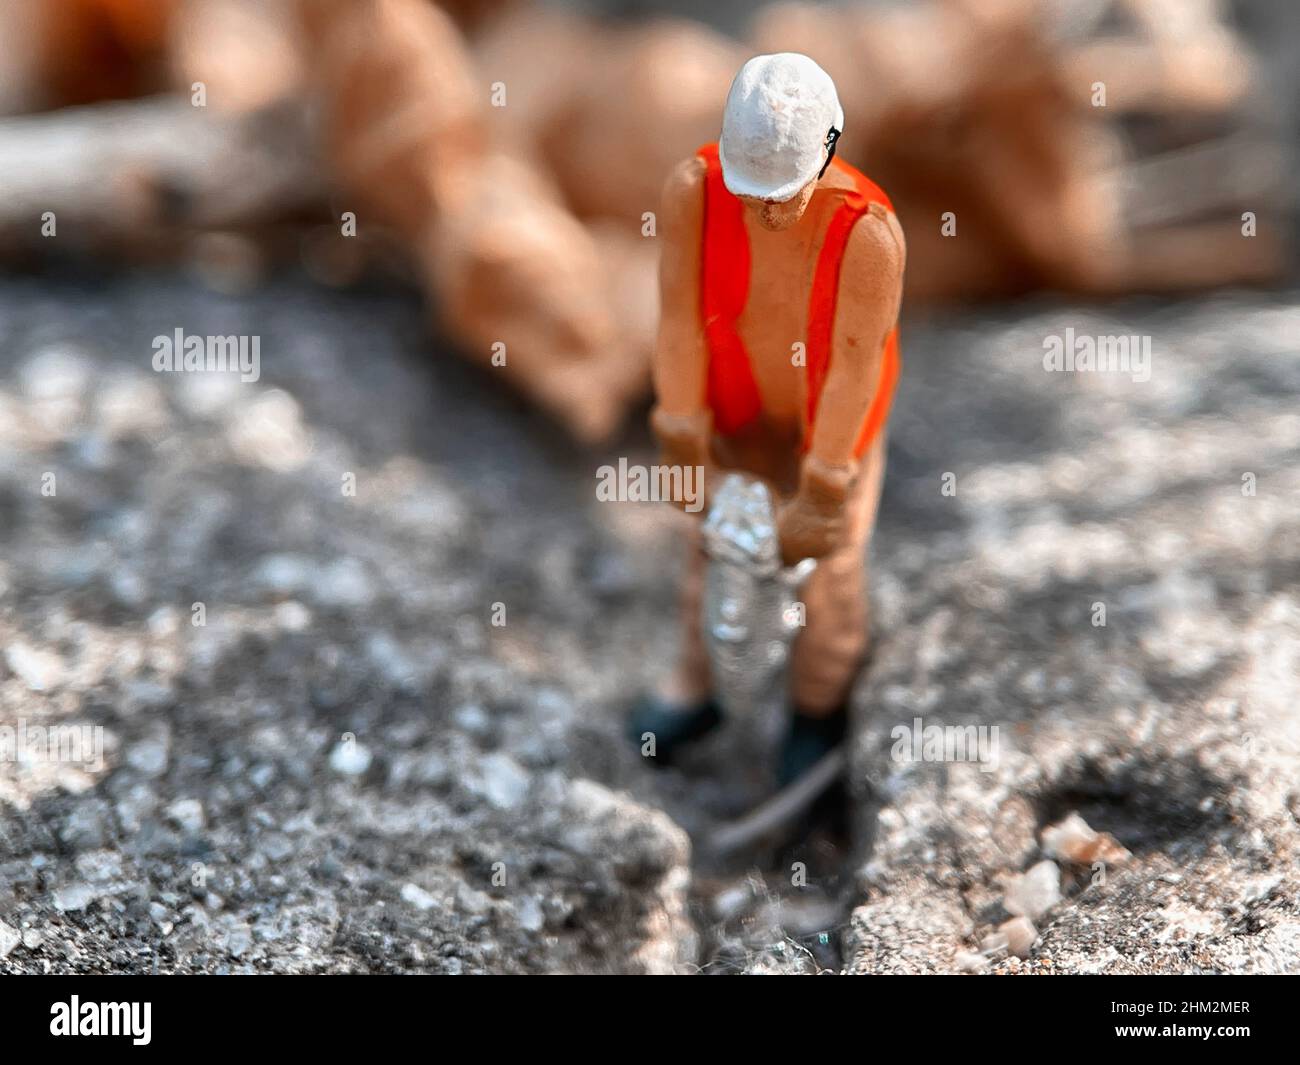 Ouvrier de jouet miniature forant une allée de béton avec un marteau-piqueur Banque D'Images